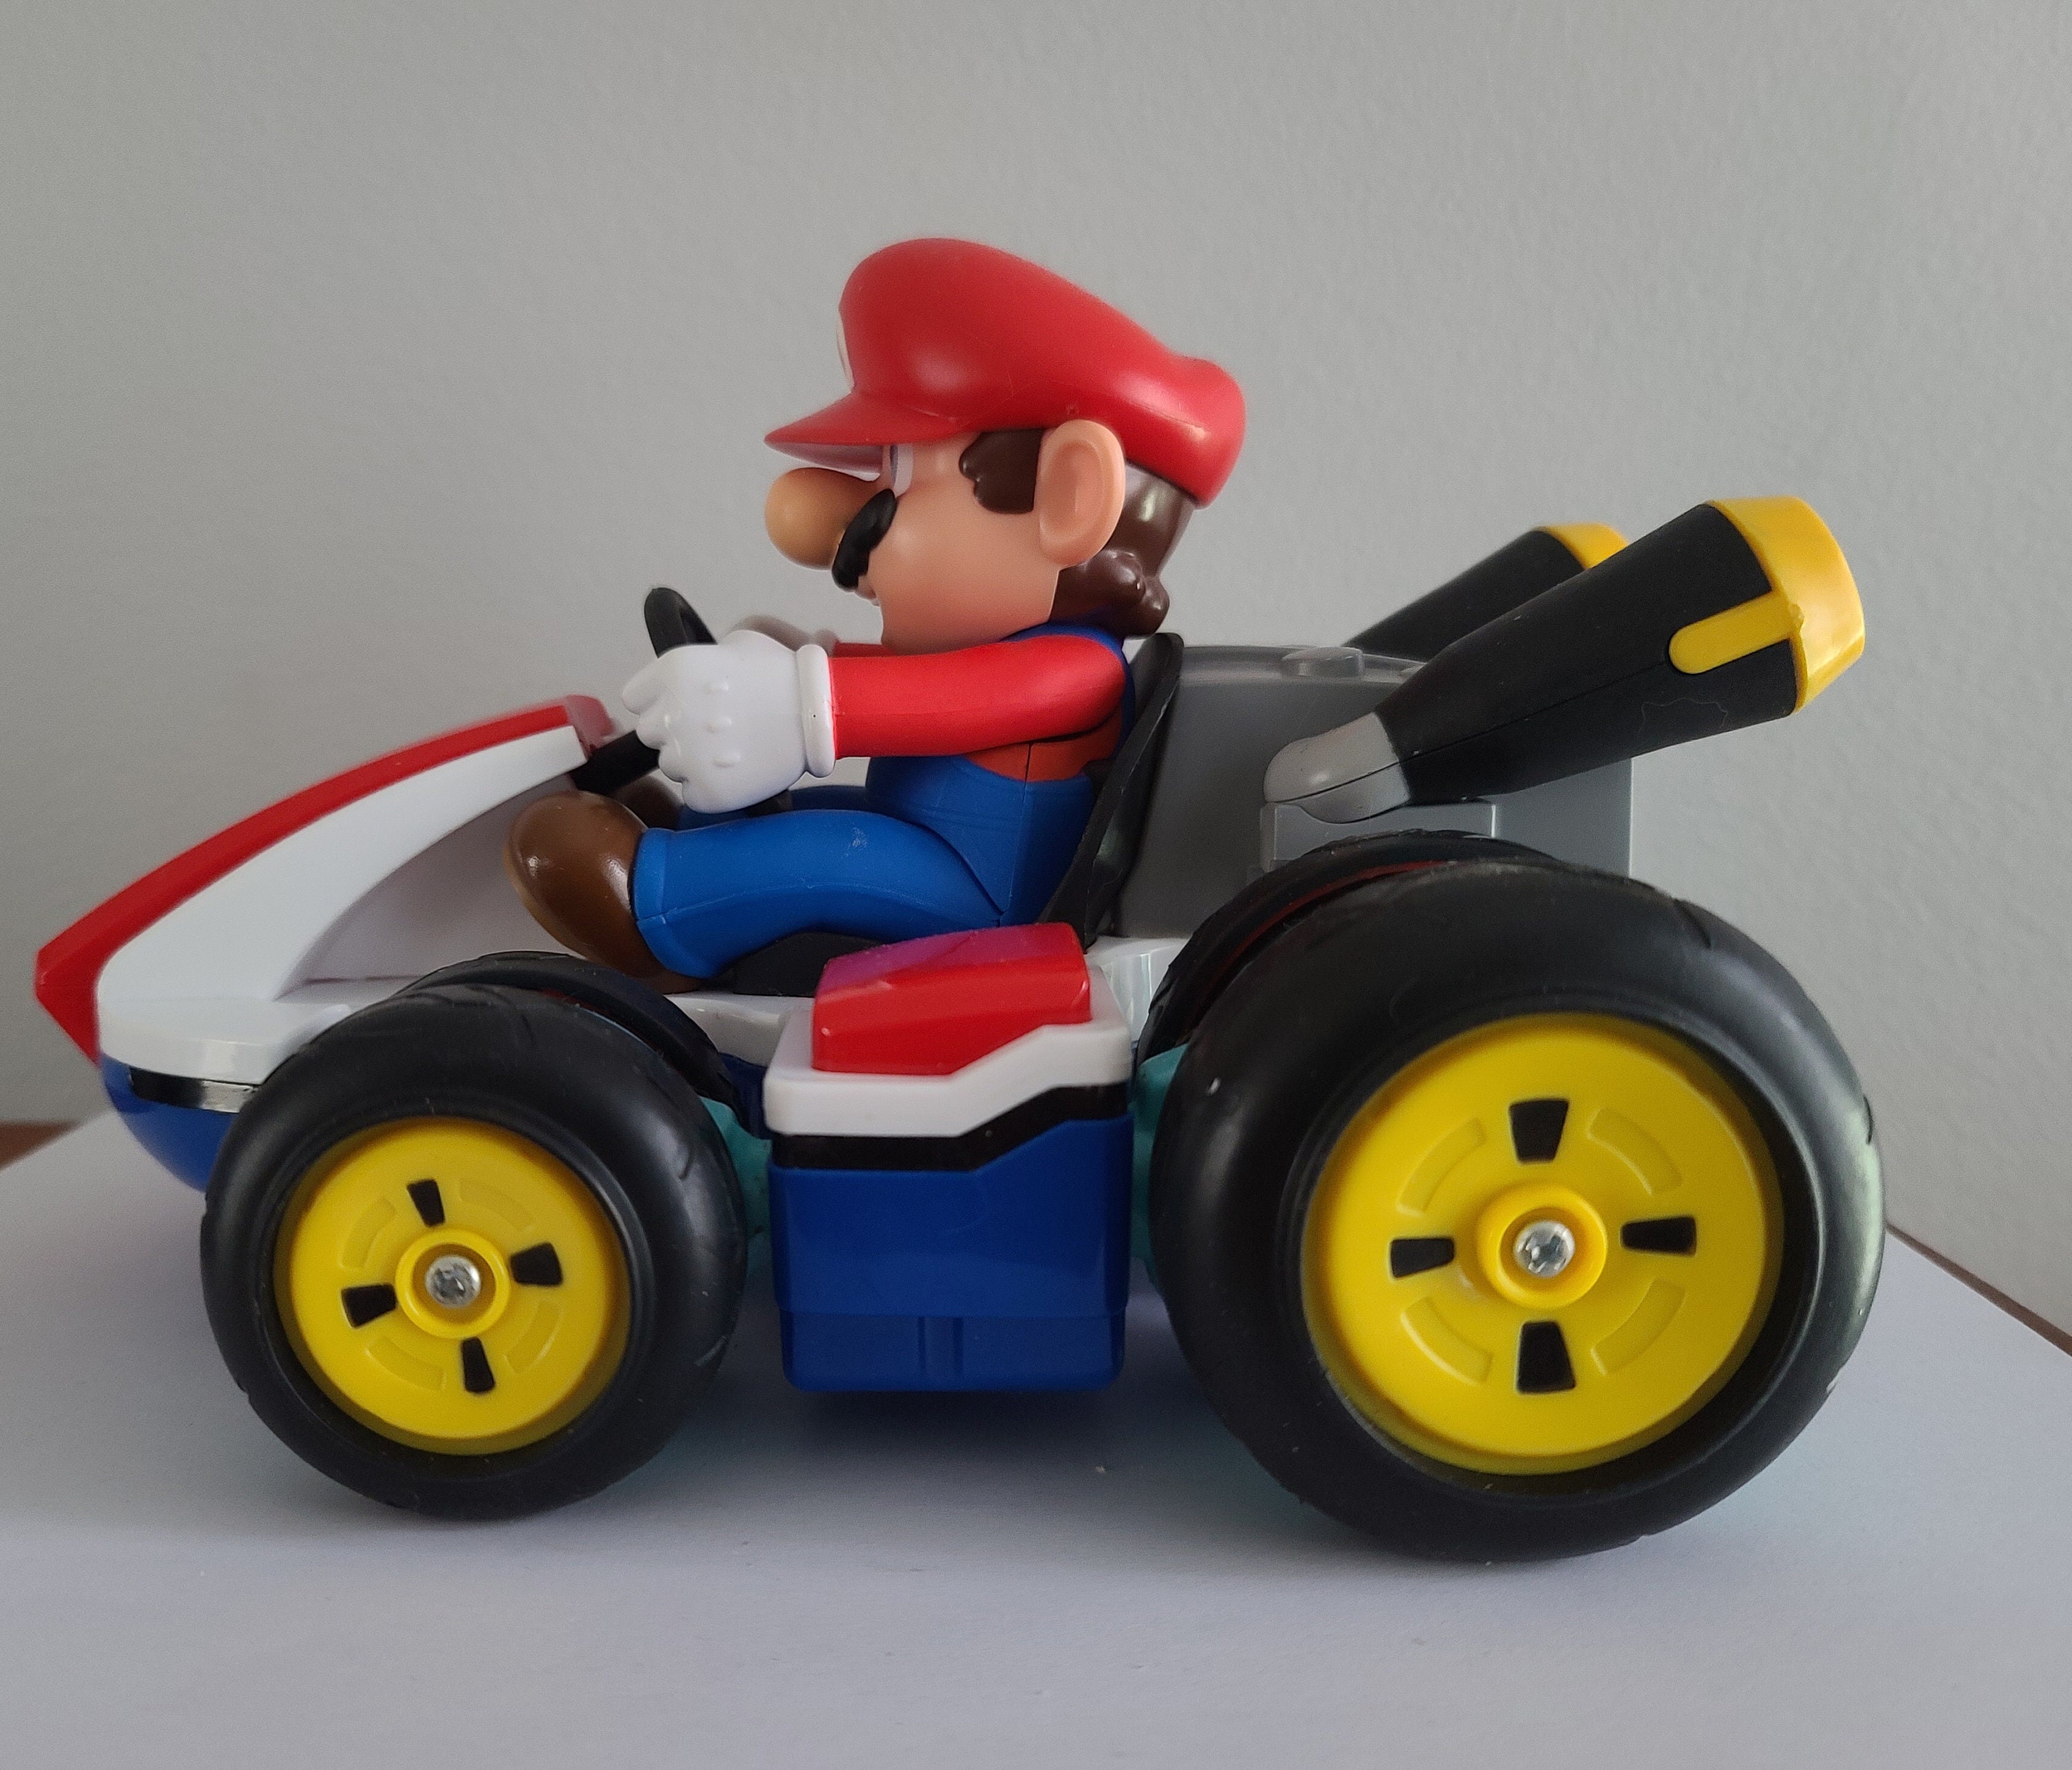 Cette voiture officielle de Mario Kart est le cadeau de Noël